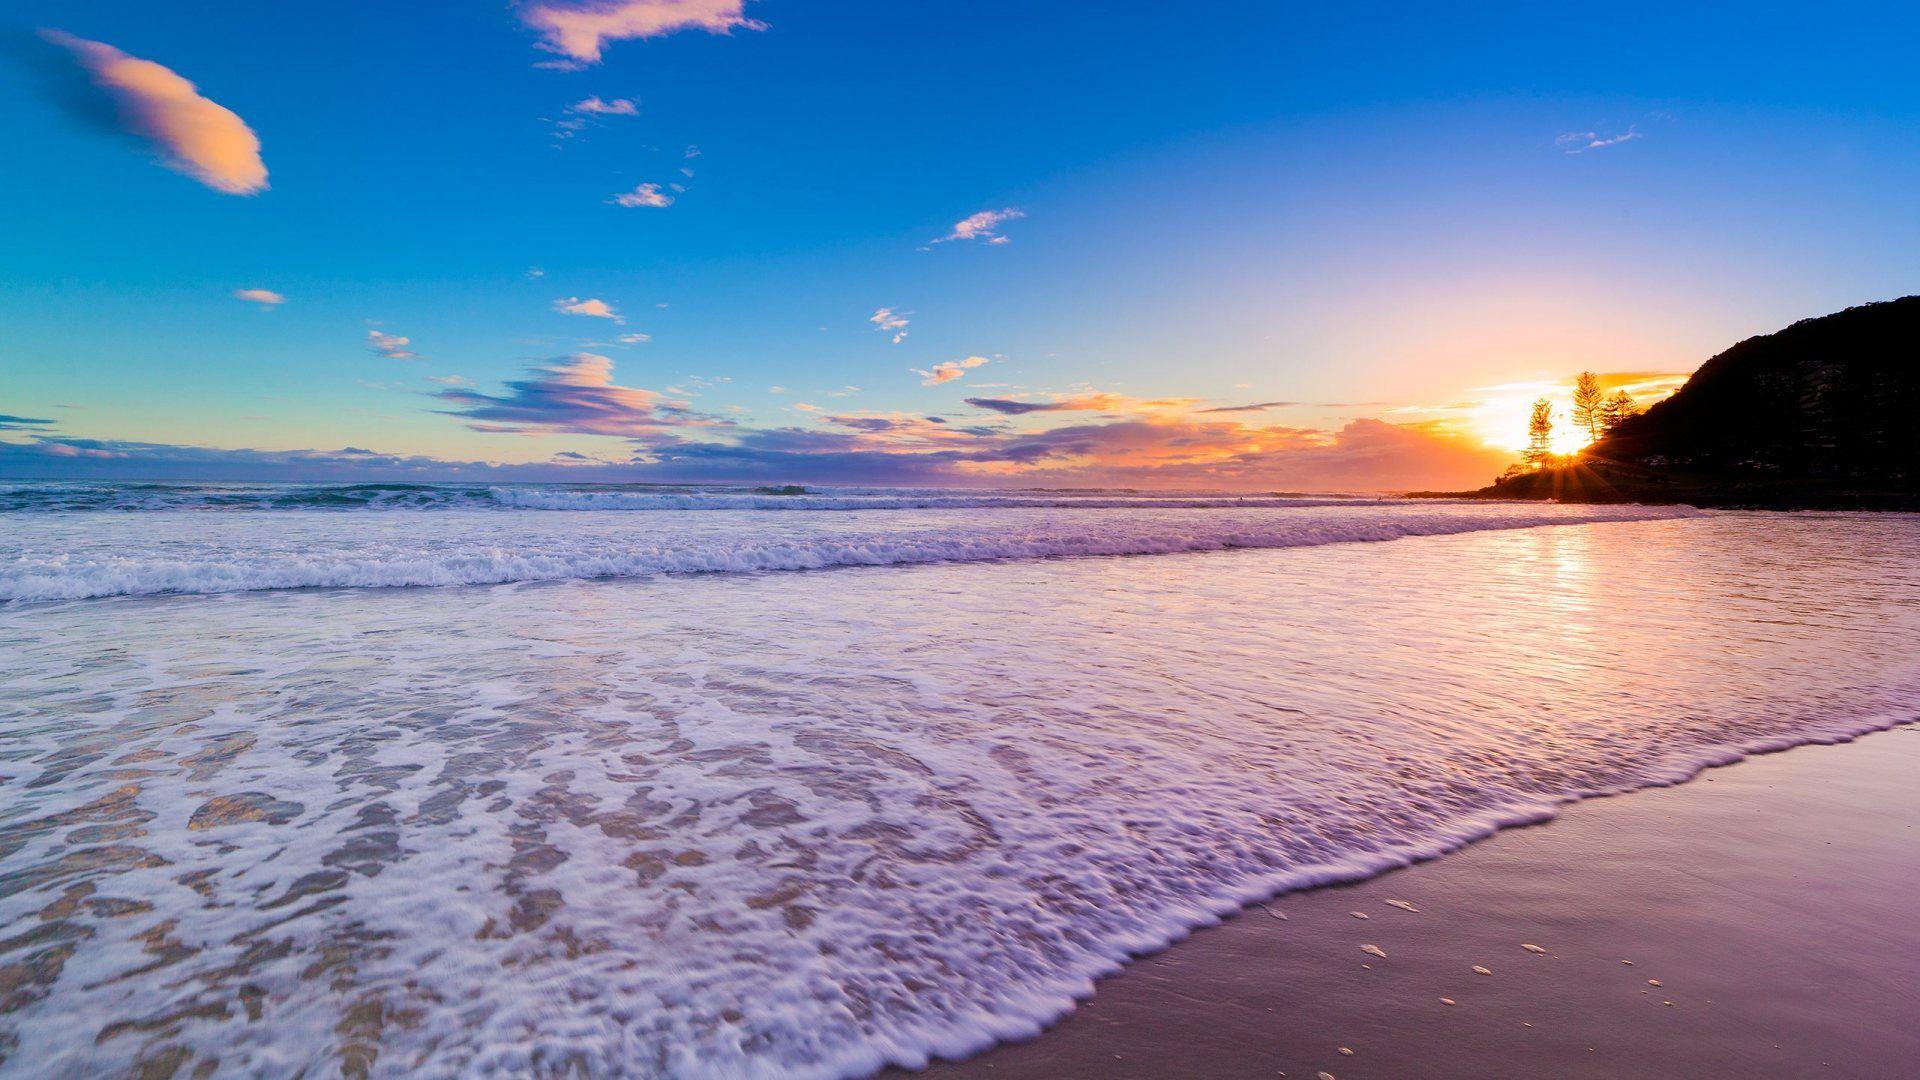 Wallpaper For > HD Beach Sunset Wallpaper 1080p